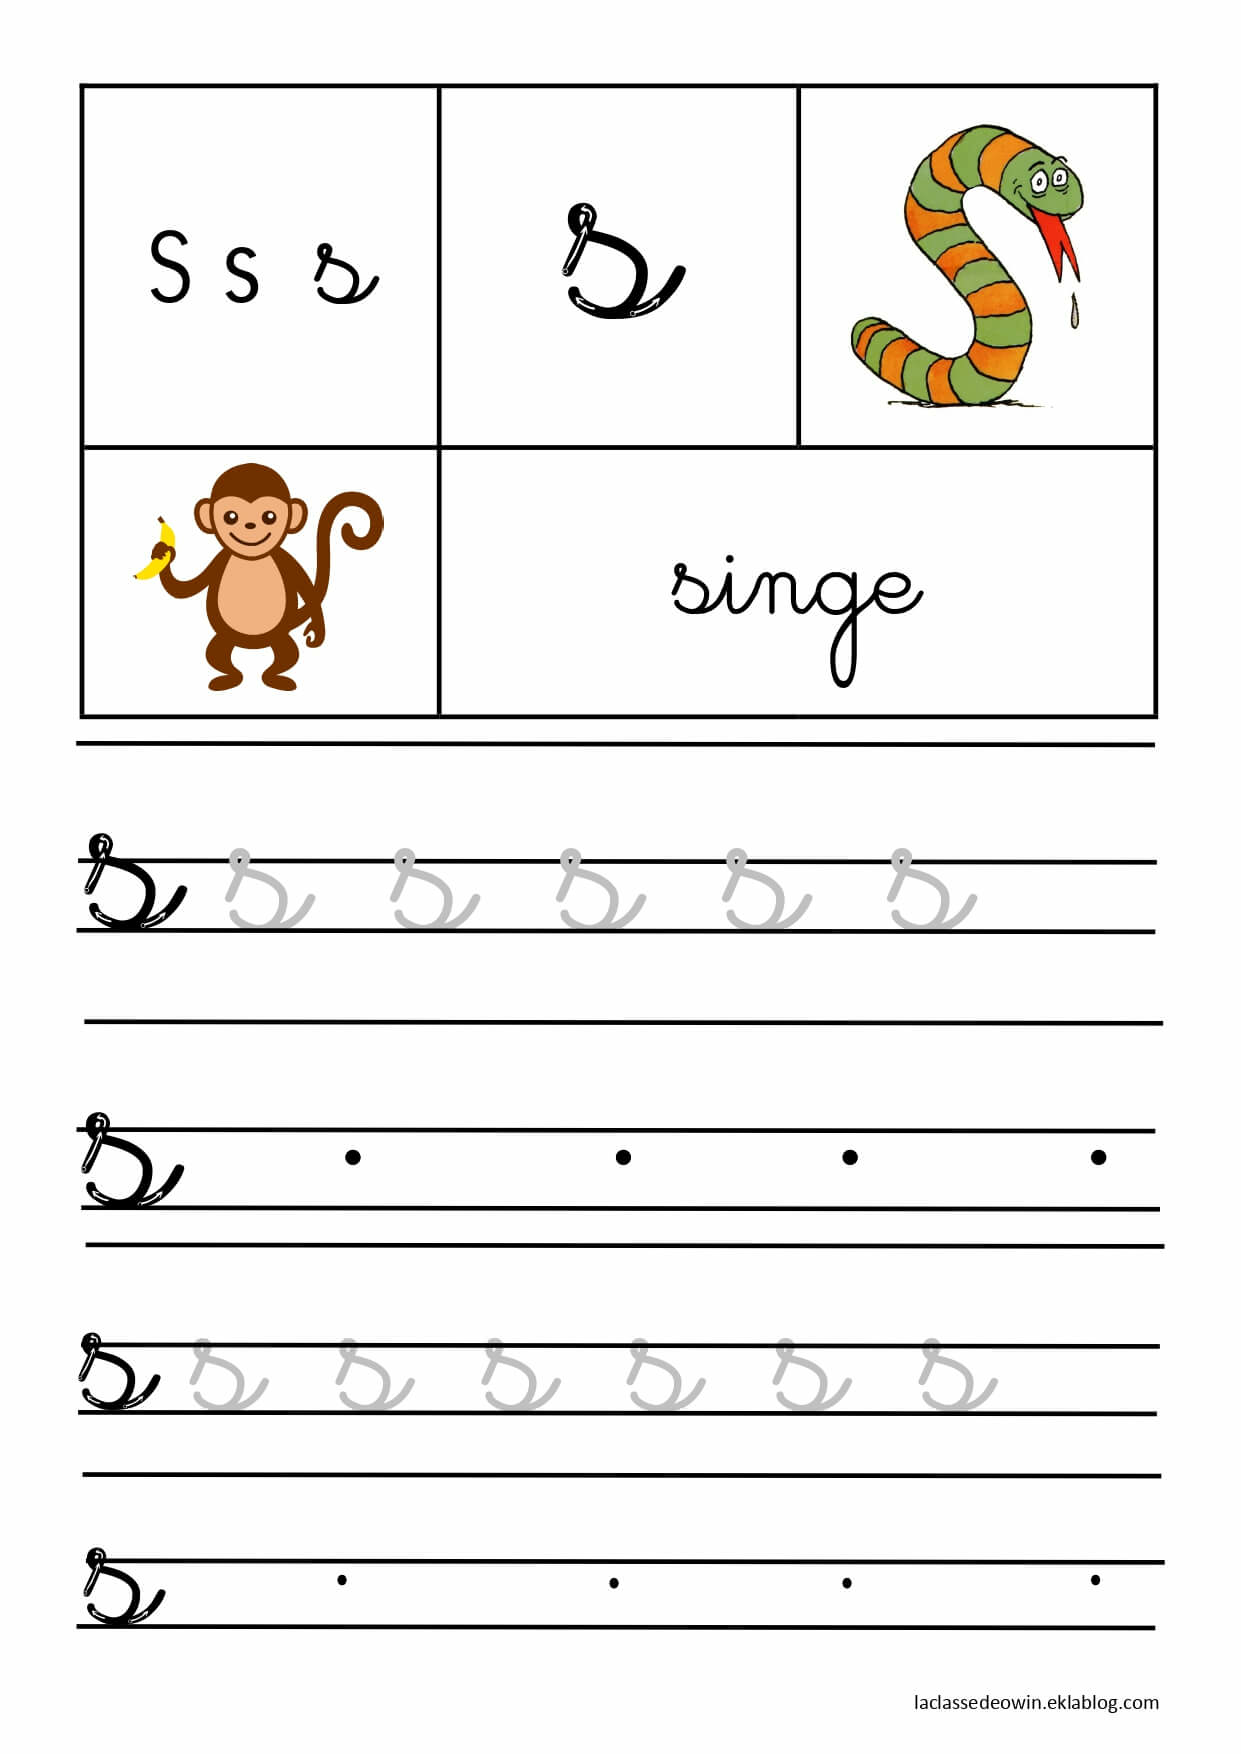   Lettre S pour singe, écriture cursive GS 